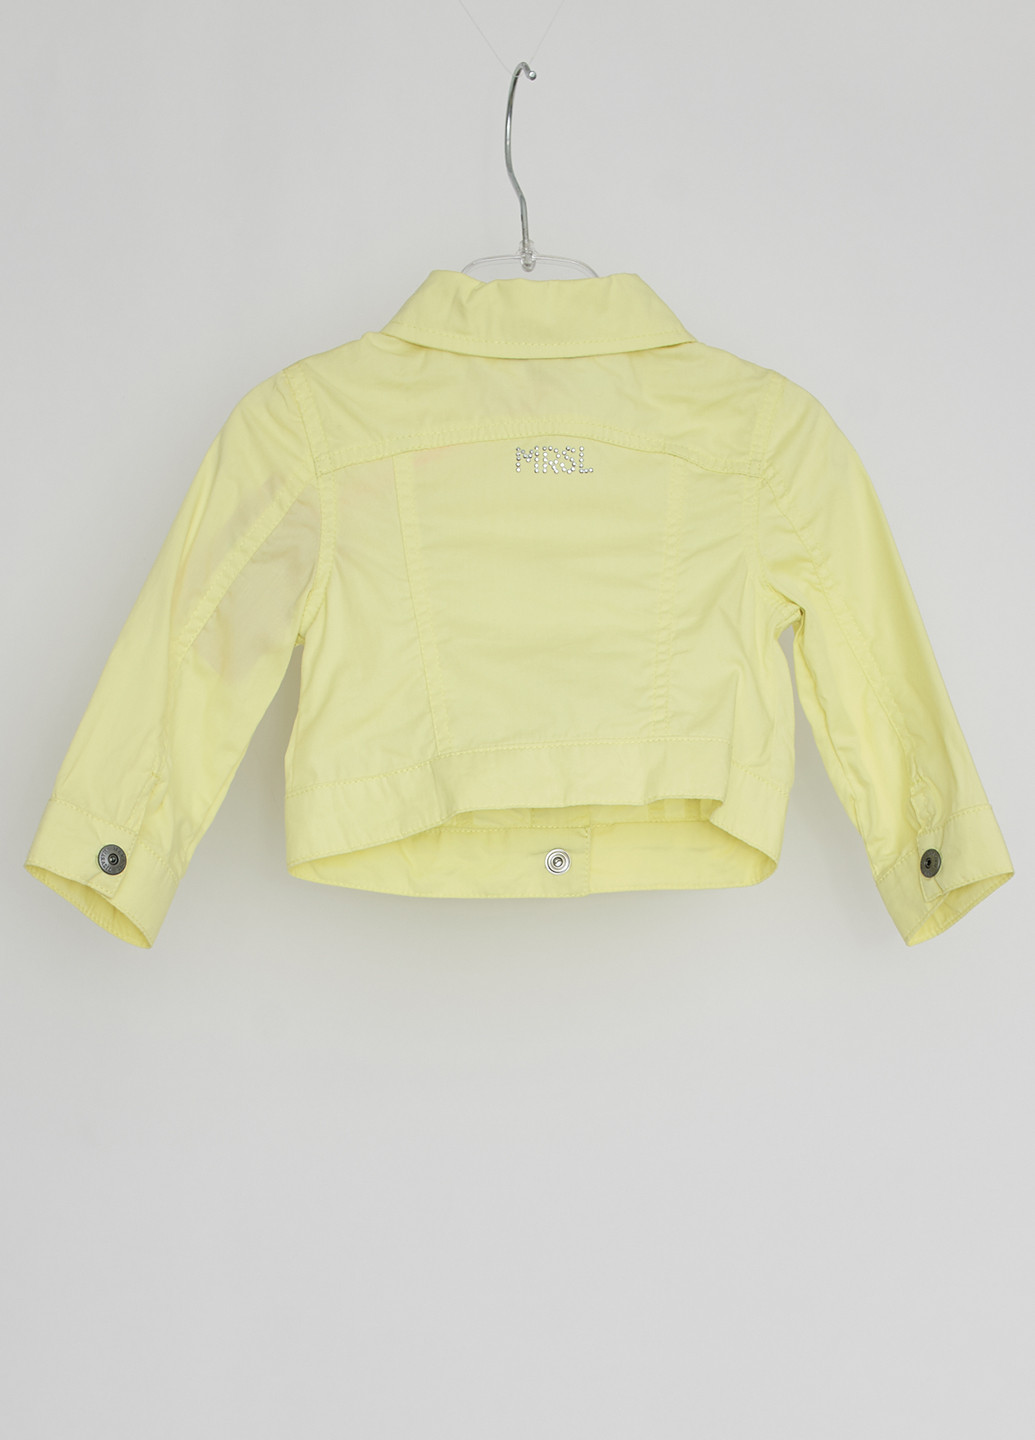 Лимонная демисезонная куртка Marasil